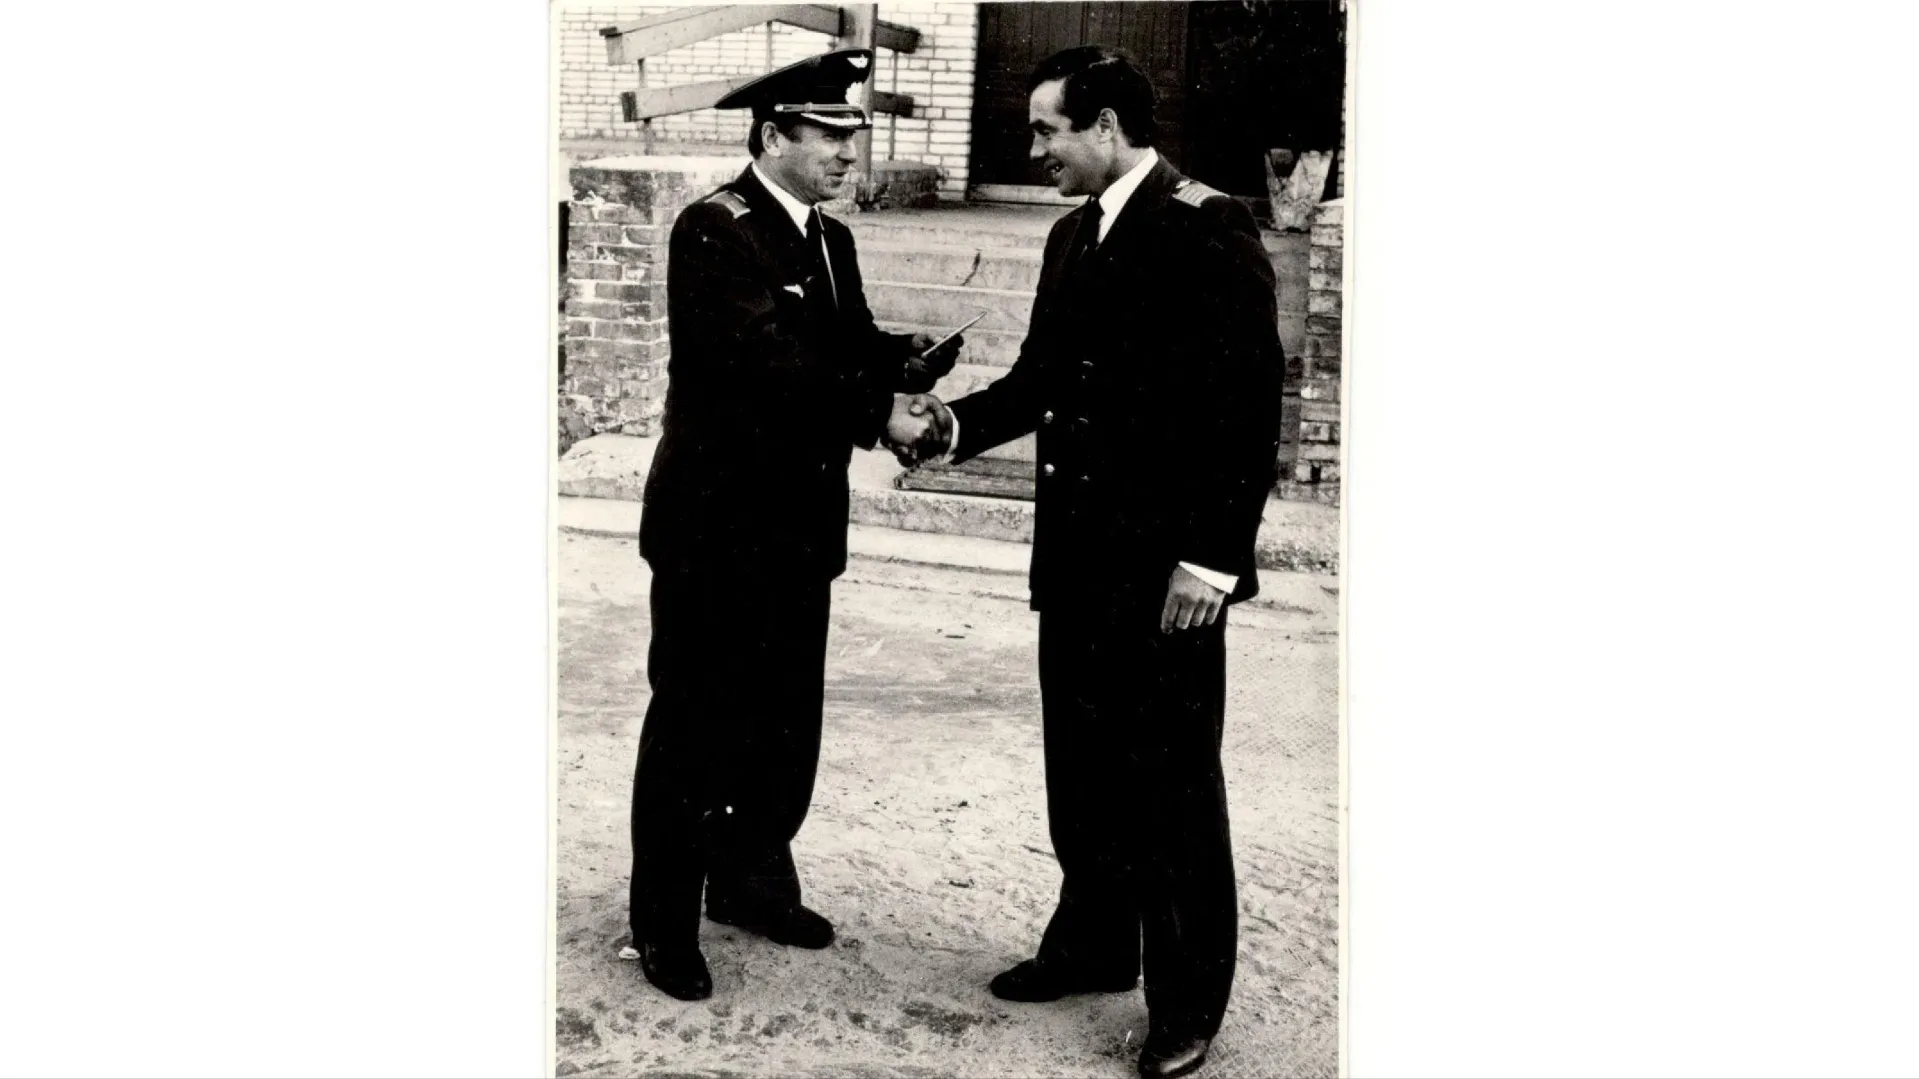 Командир вертолётного отряда Павел Веснин вручает Анатолию Кудину пилотское свидетельство 1-го класса. Фото: предоставлено из личного архива Анатолия Кудина